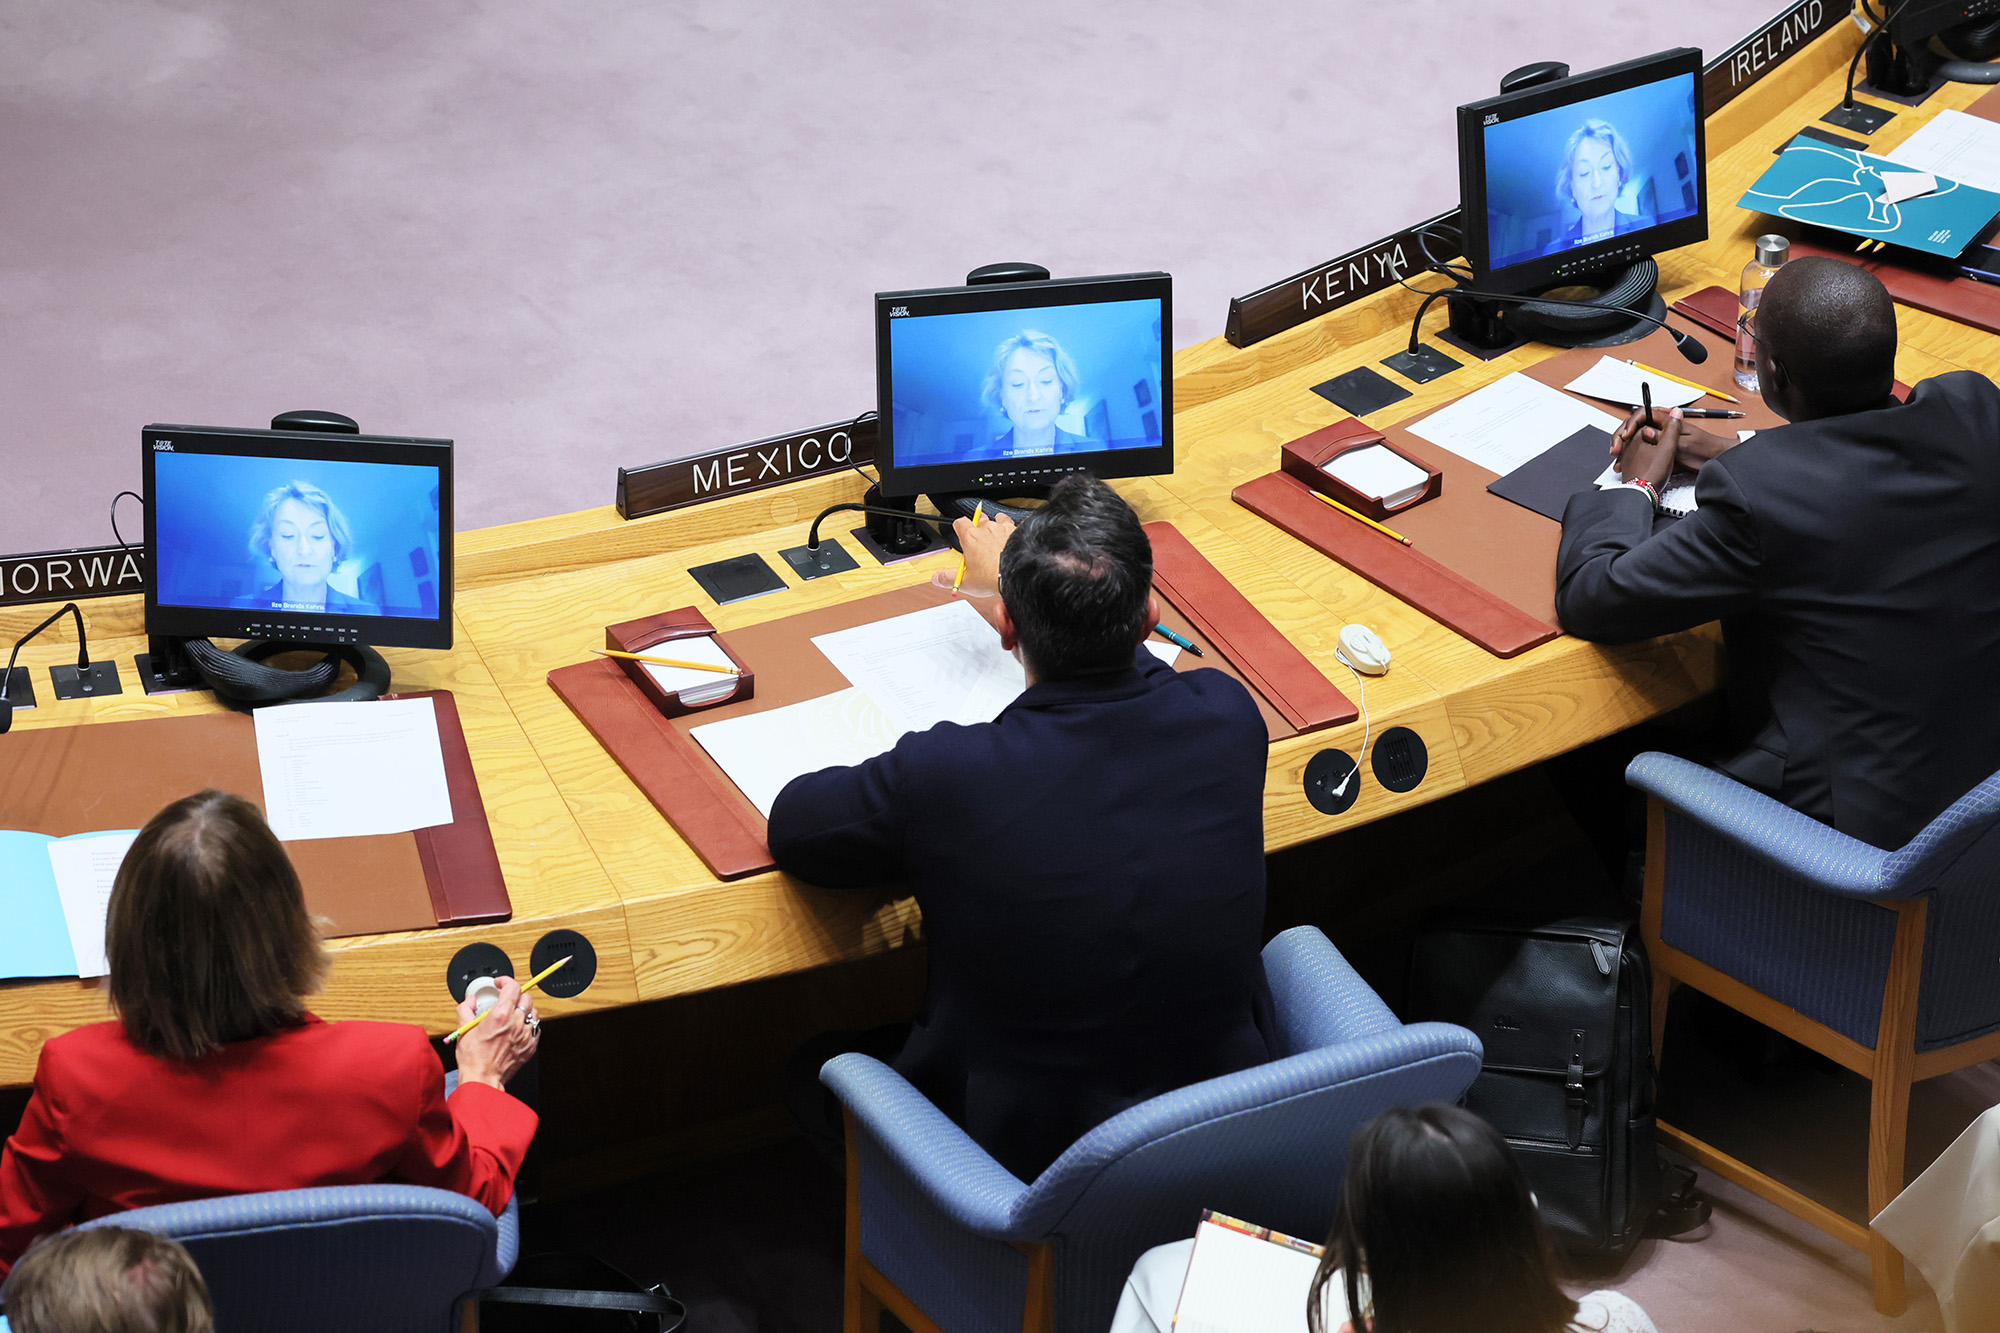 Els Brandis Kerris, Subsecretaria General de Derechos Humanos, habla virtualmente durante una reunión del Consejo de Seguridad de las Naciones Unidas para discutir la guerra en Ucrania en la Sede de las Naciones Unidas, Nueva York, Estados Unidos, el 7 de septiembre.